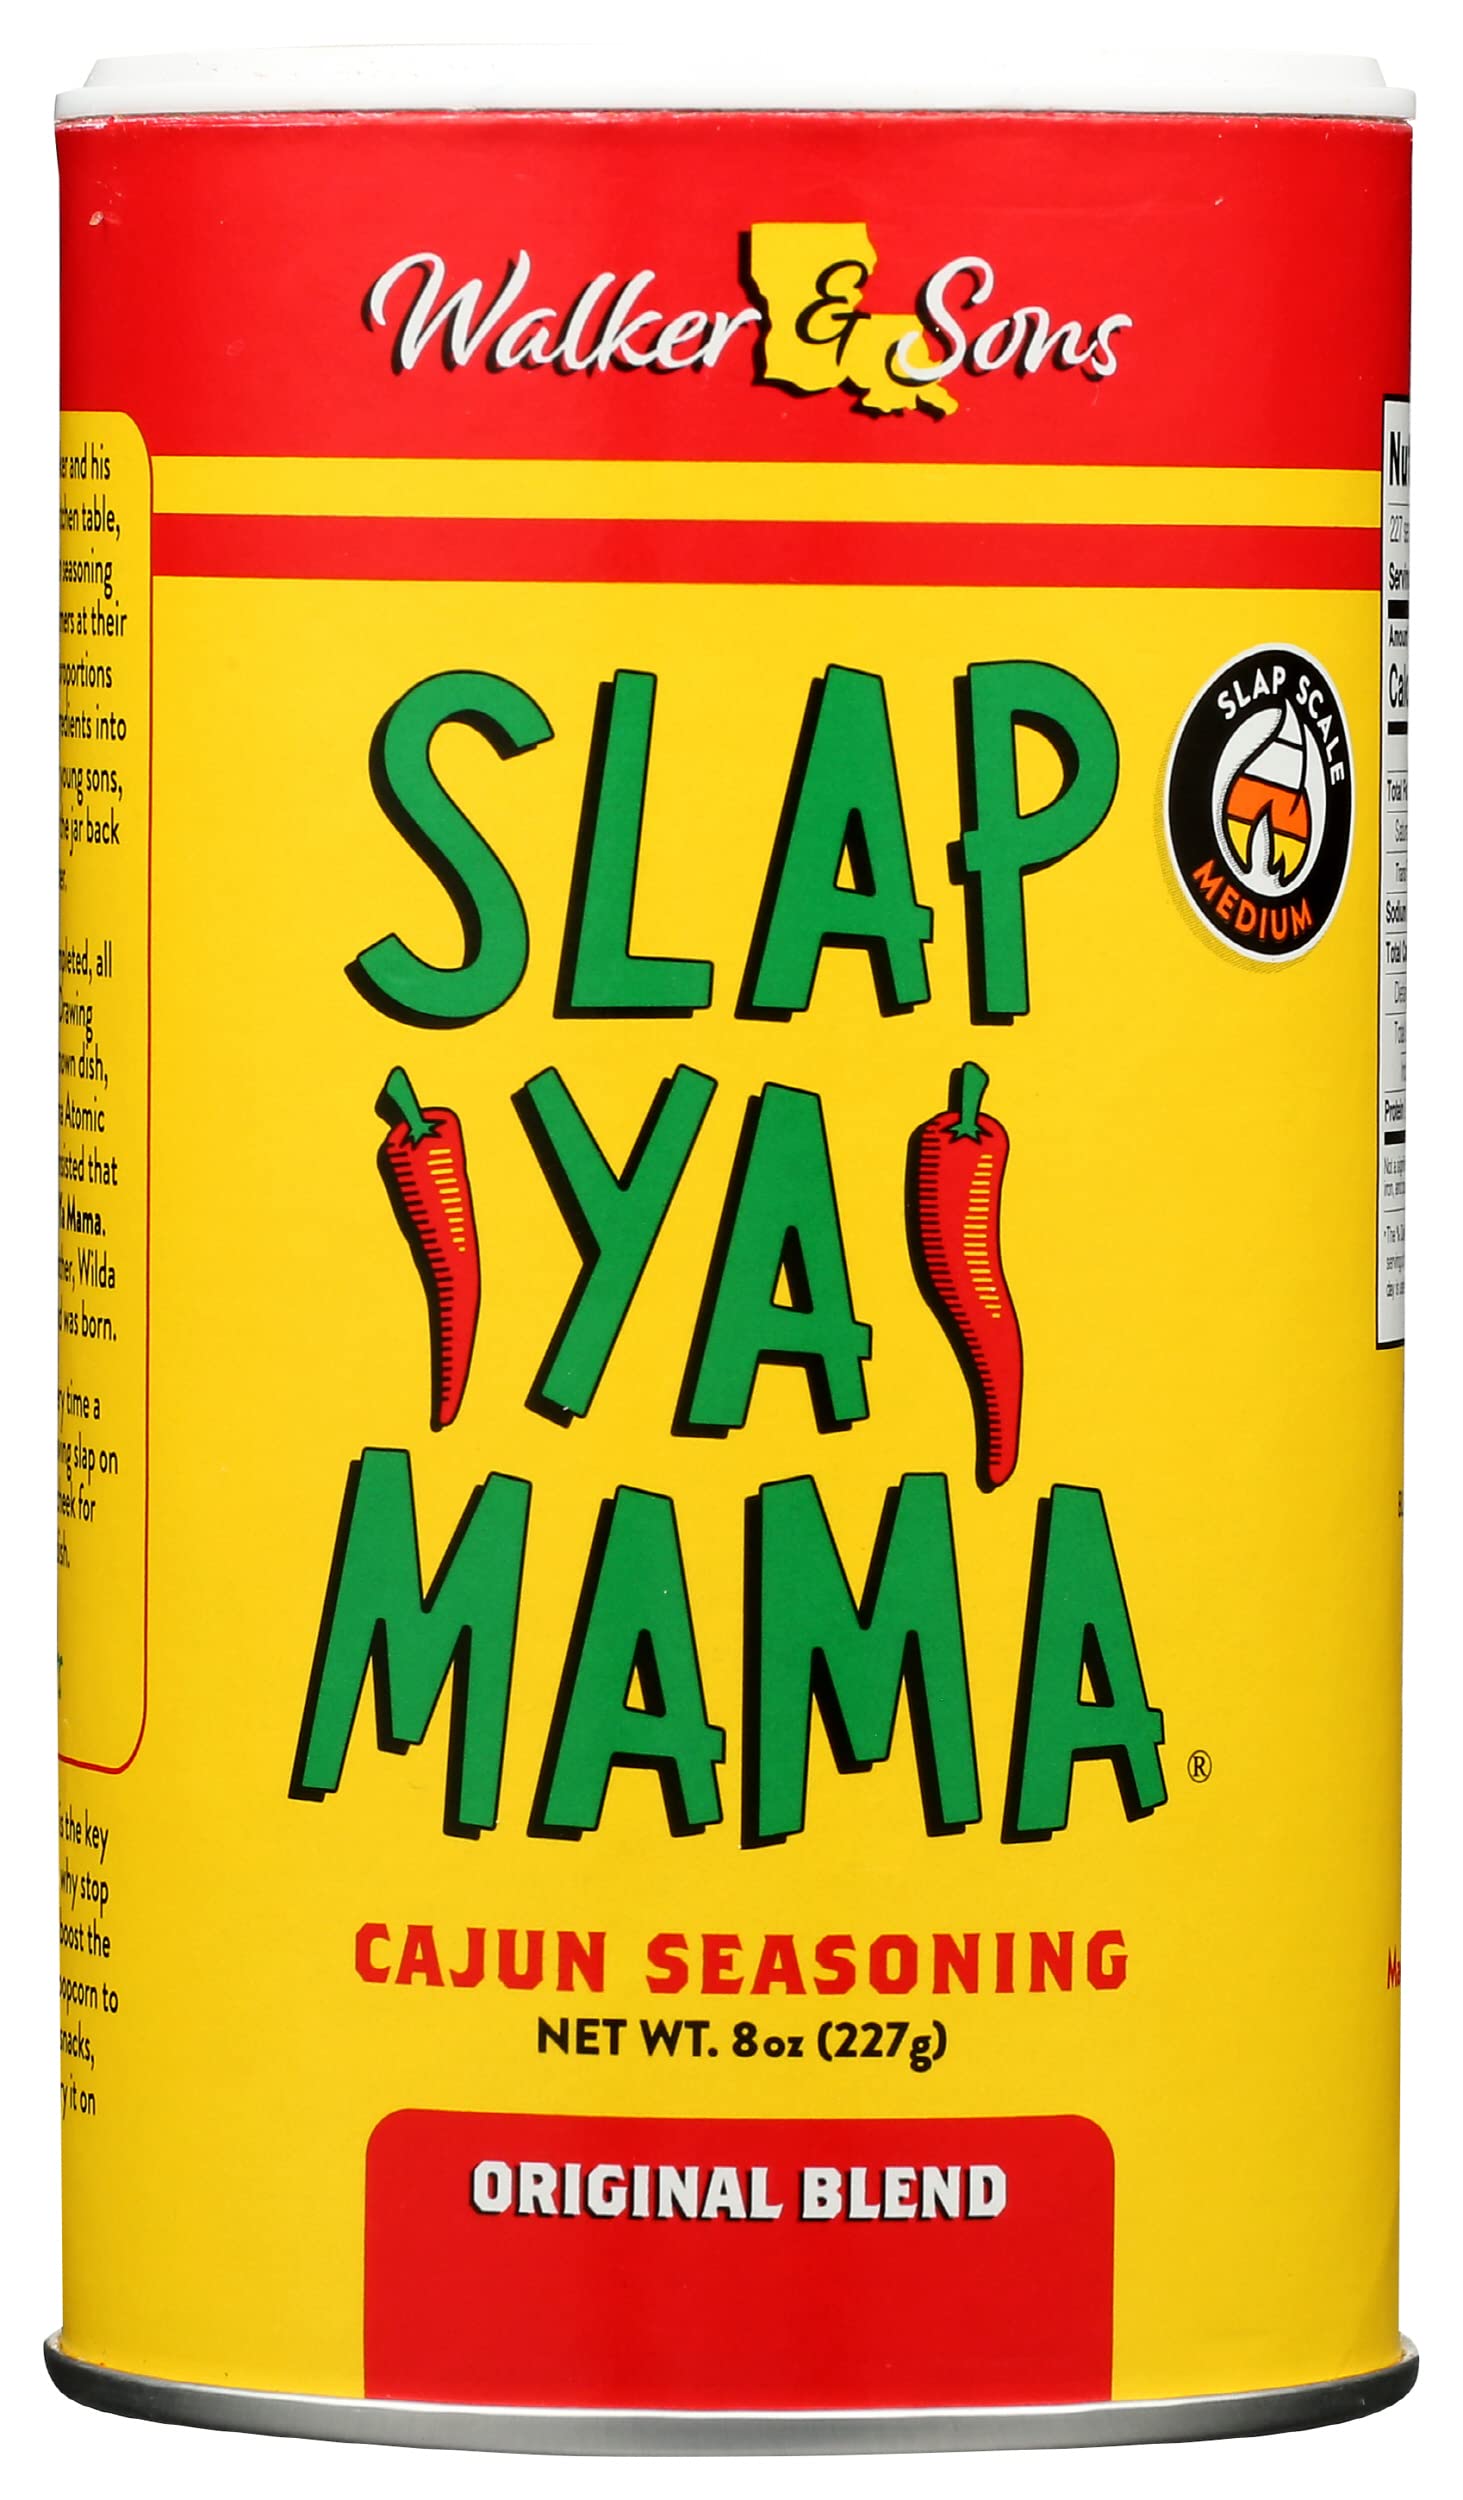 One 8 oz Slap Ya Mama Cajun Seasoning White Pepper Blend